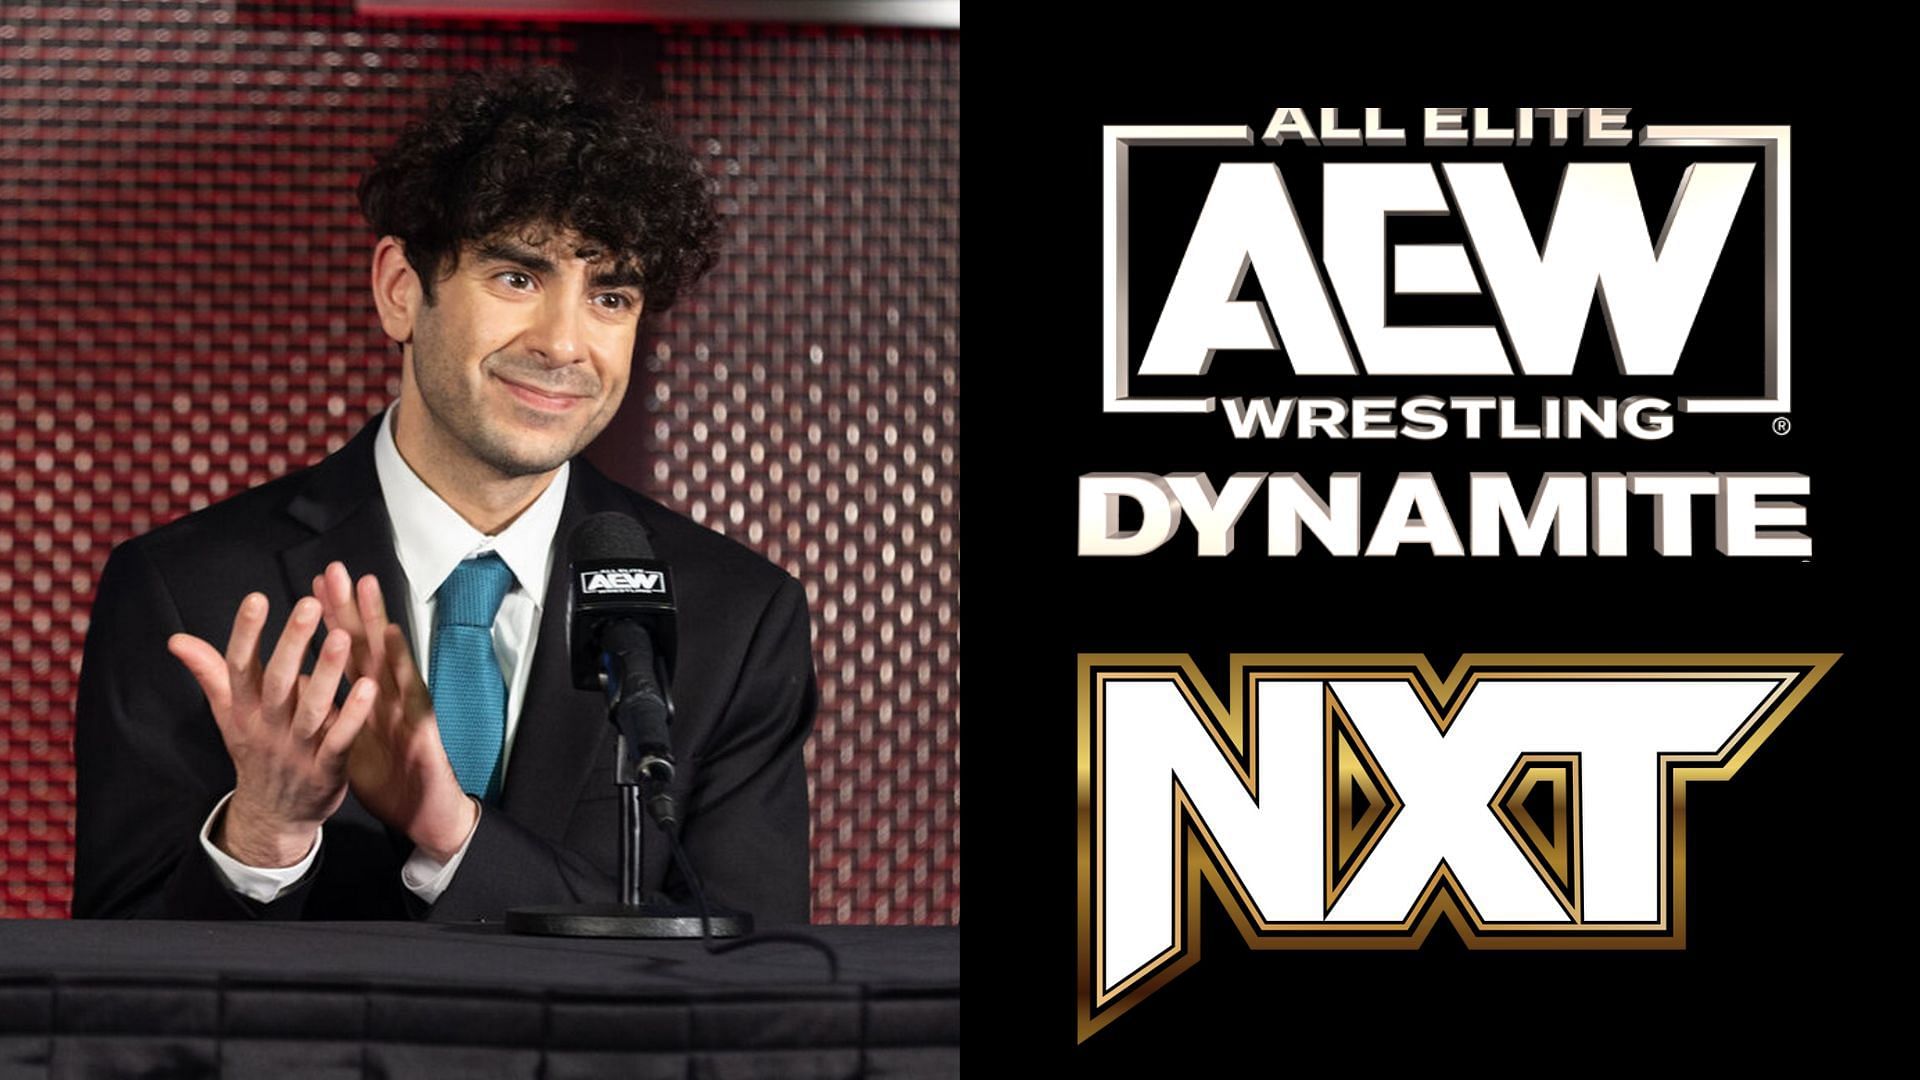 Will Tony Khan defeat NXT again tonight?